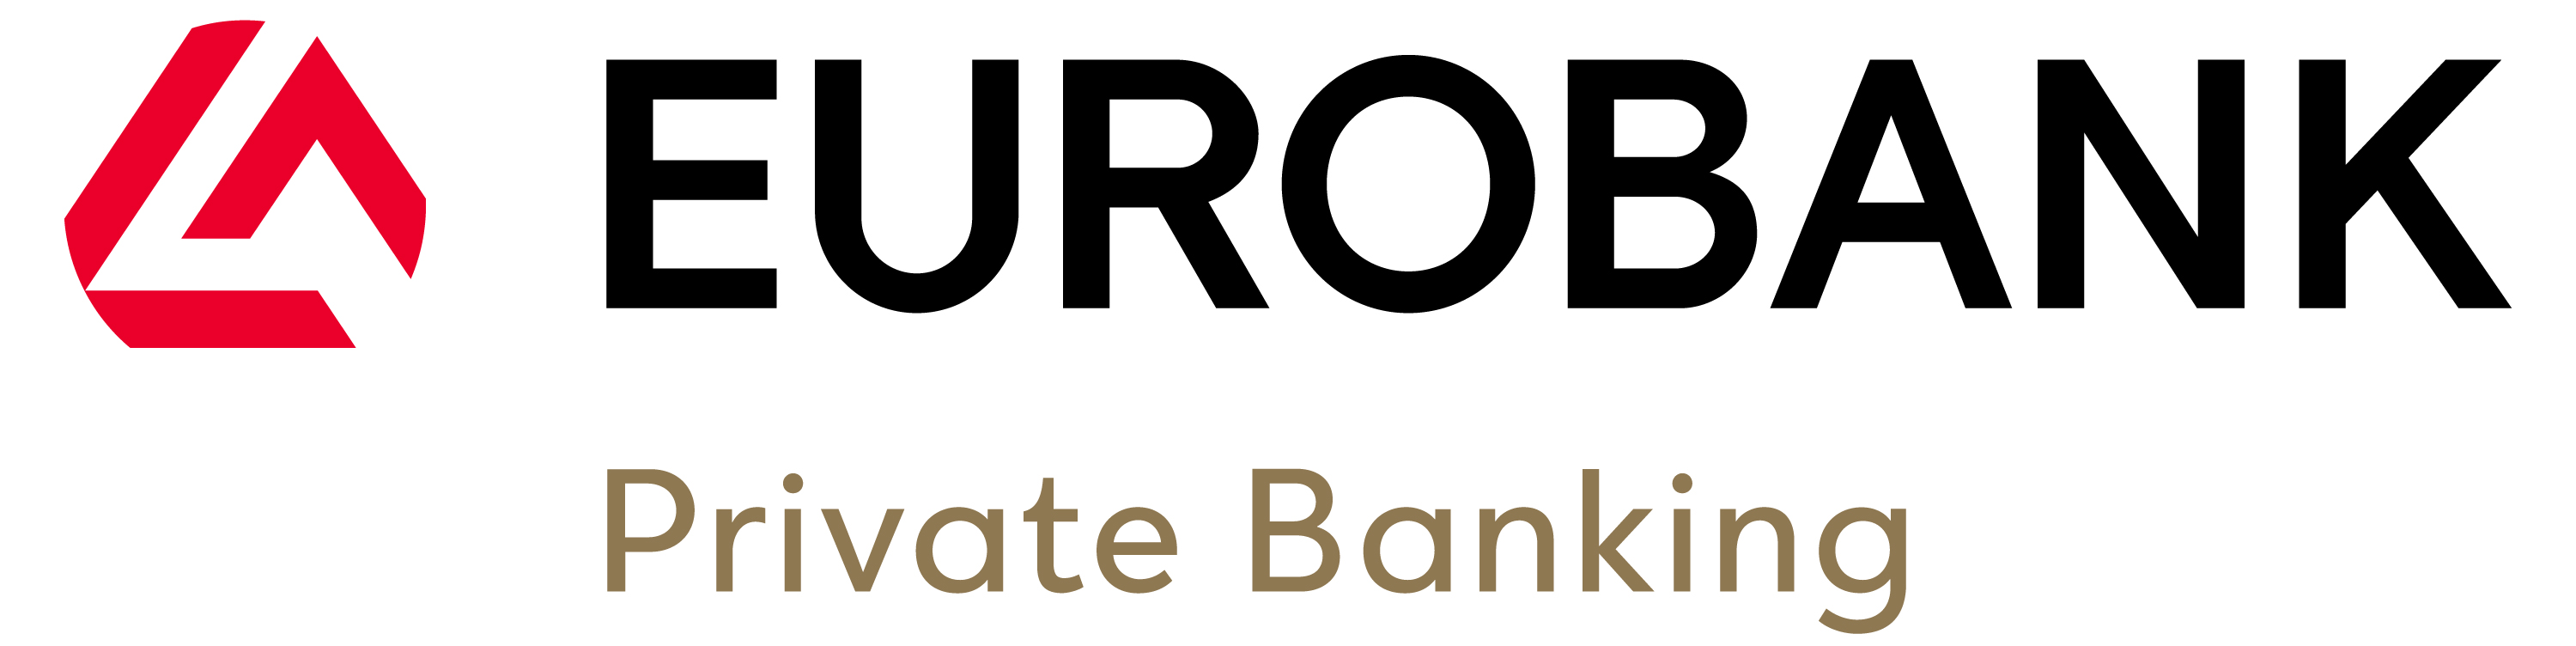 Eurobank PB Standard Size RGB